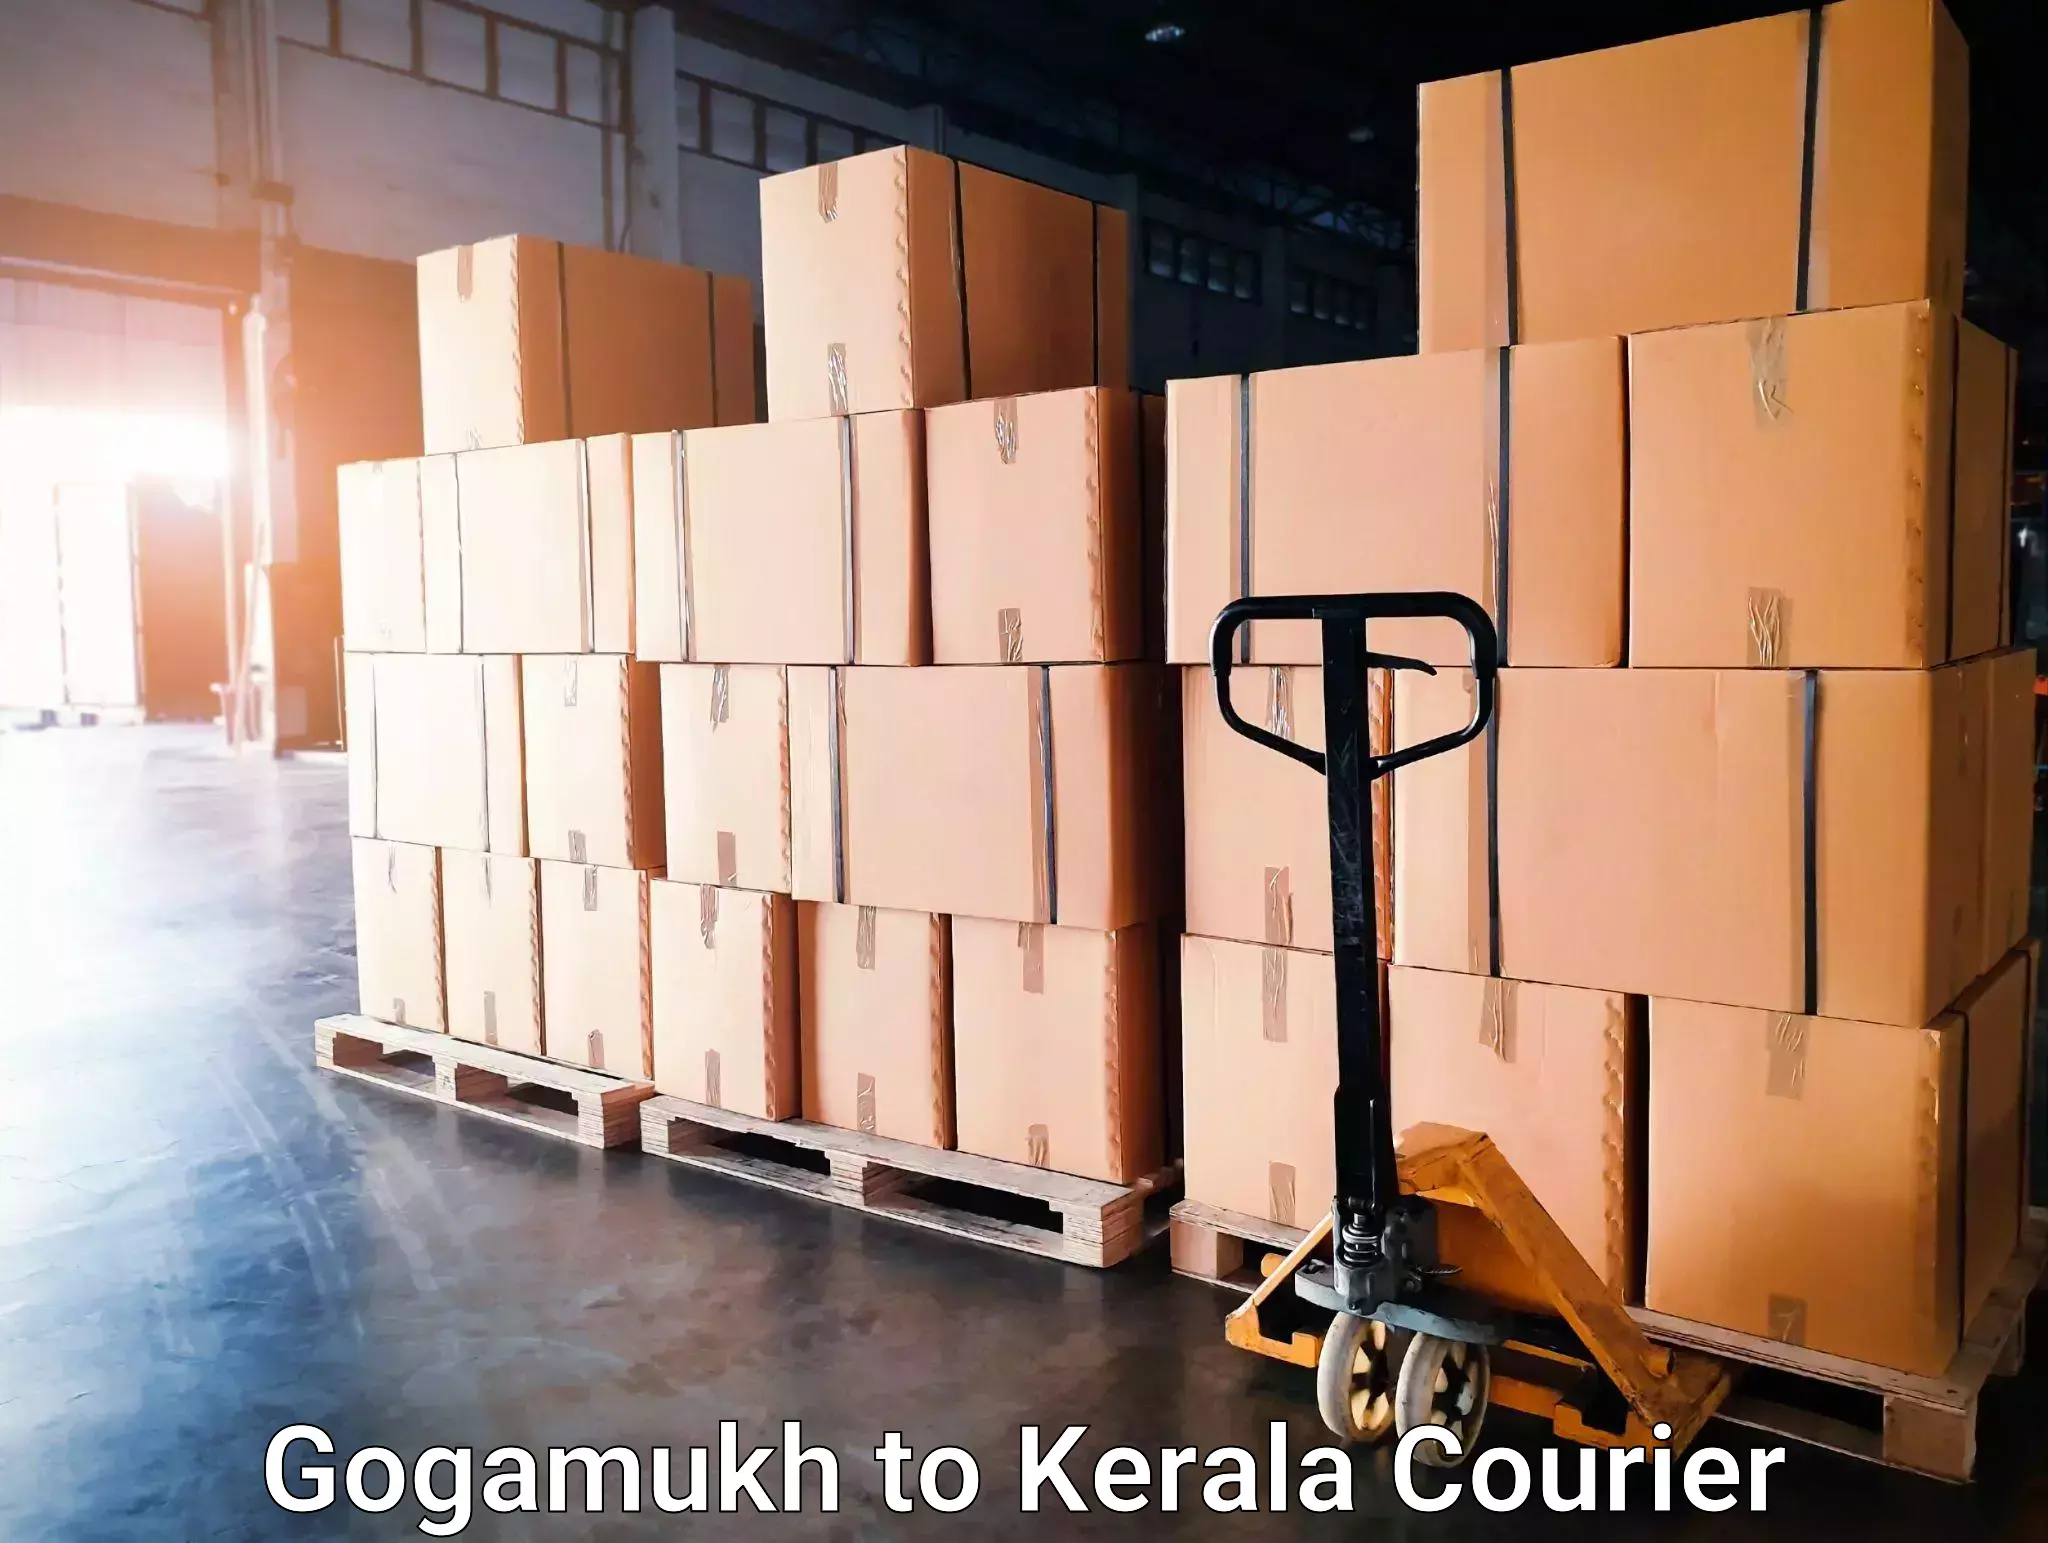 International courier networks Gogamukh to Kerala